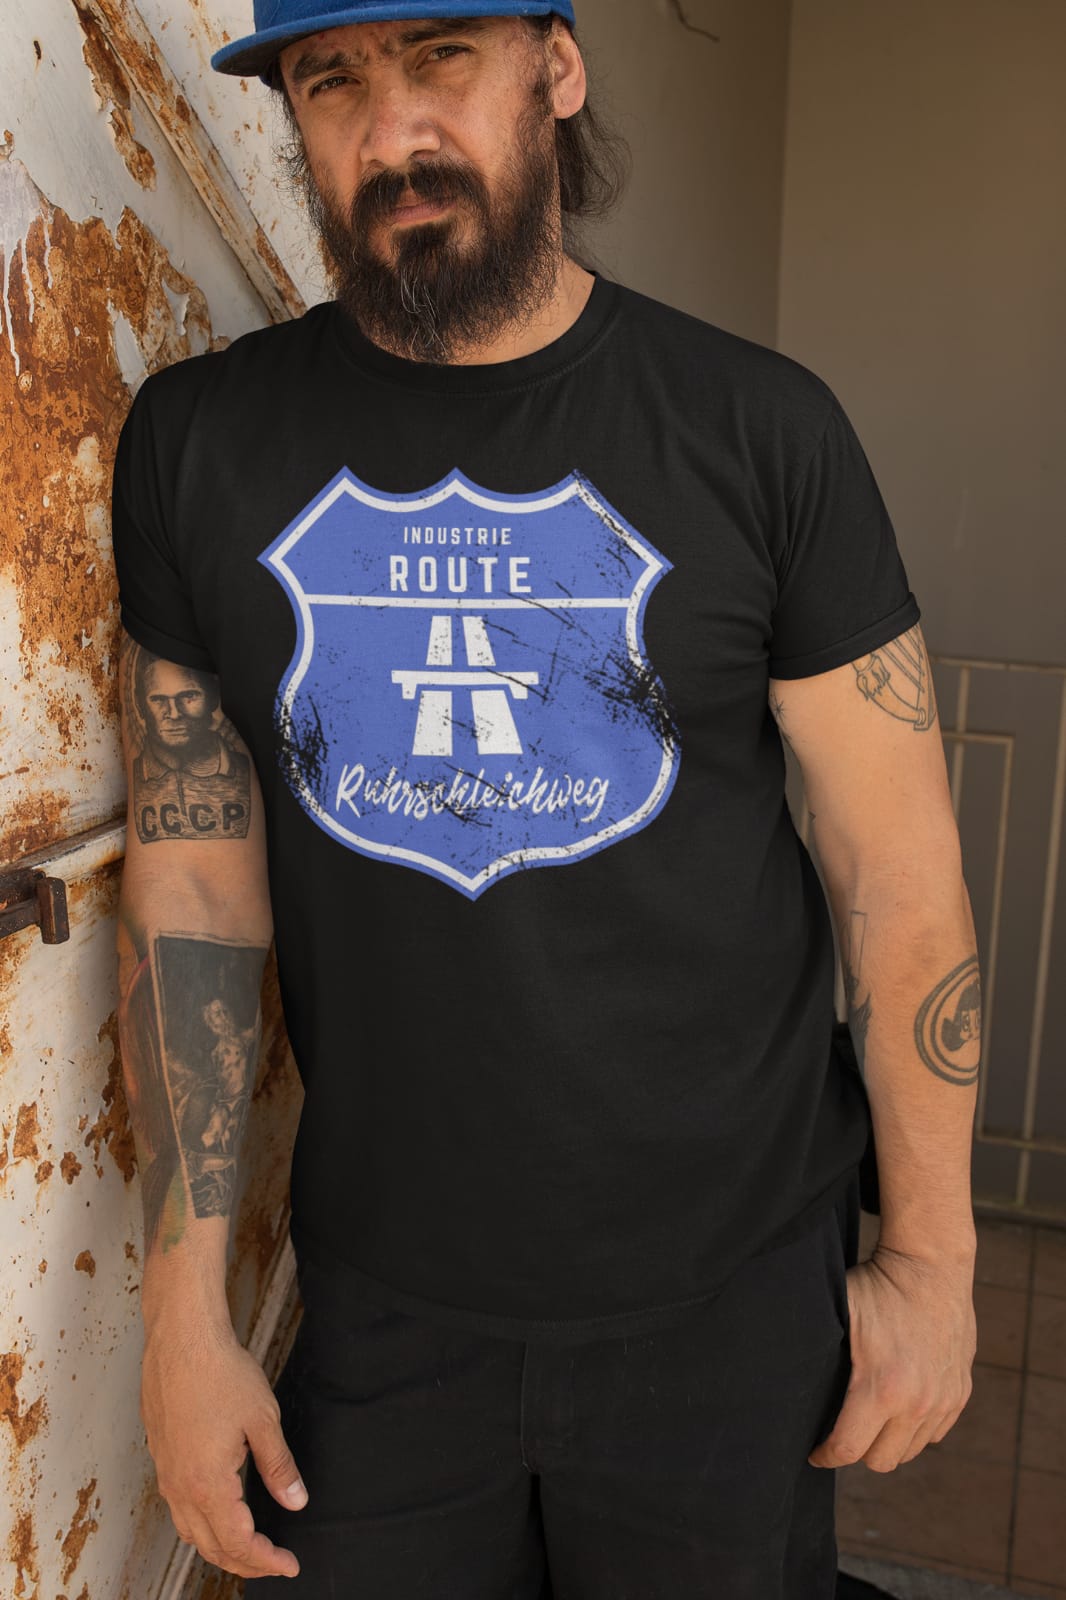 T-Shirt "Ruhrschleichweg"